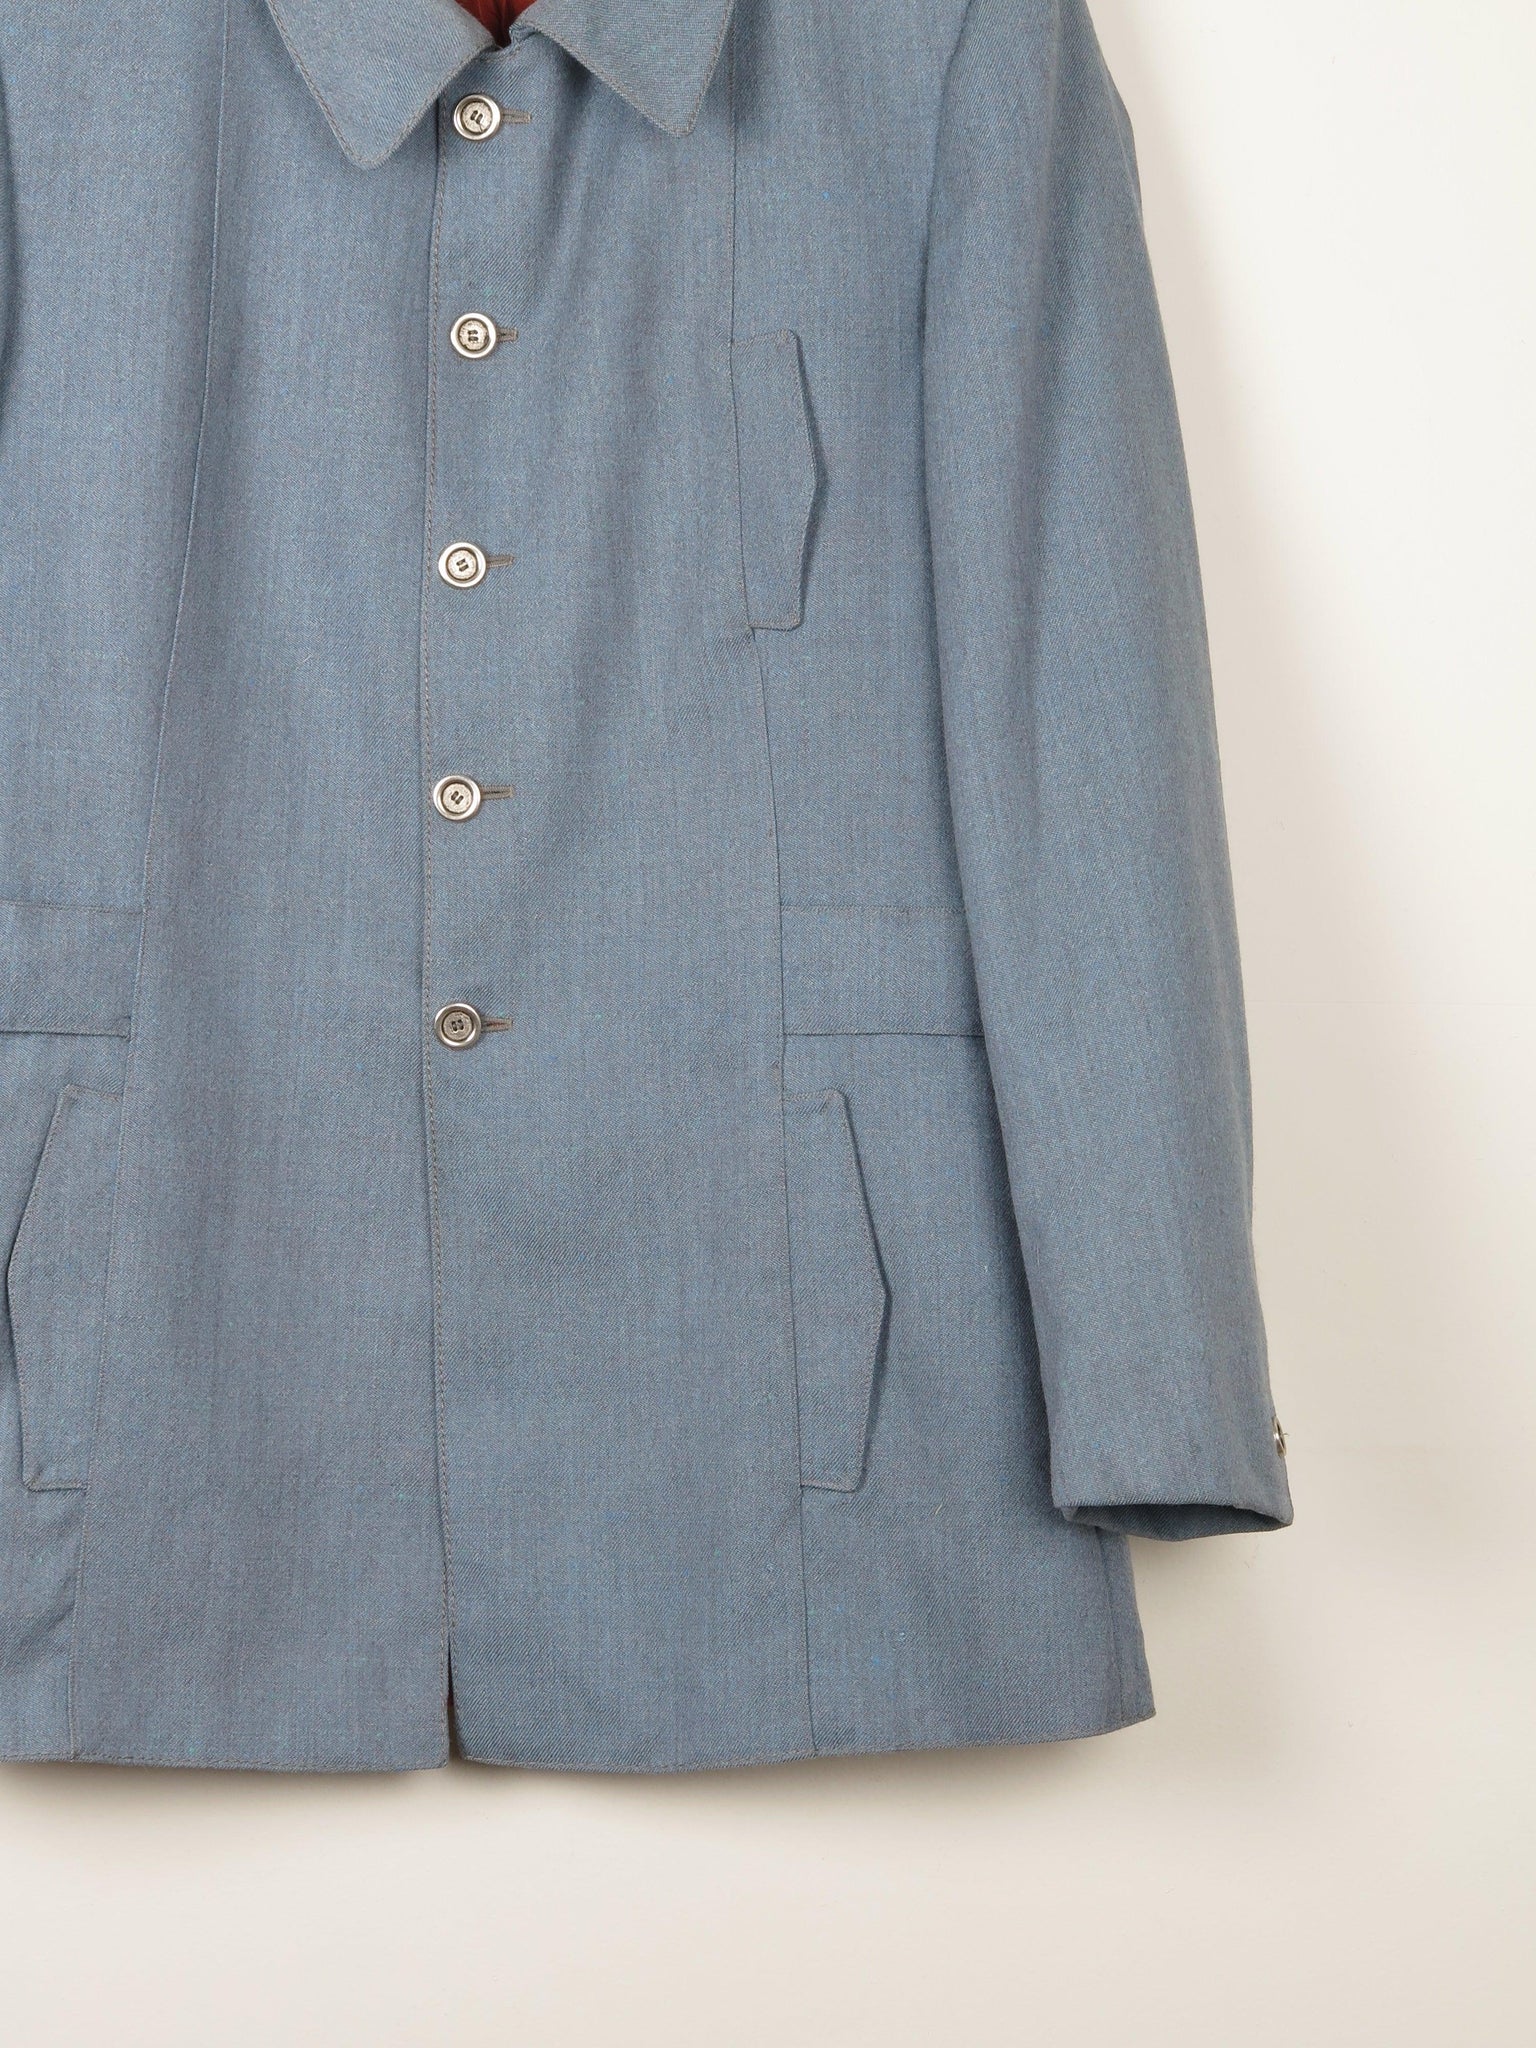 Men's 1960s Vintage Blue Jacket 40"S/M - The Harlequin